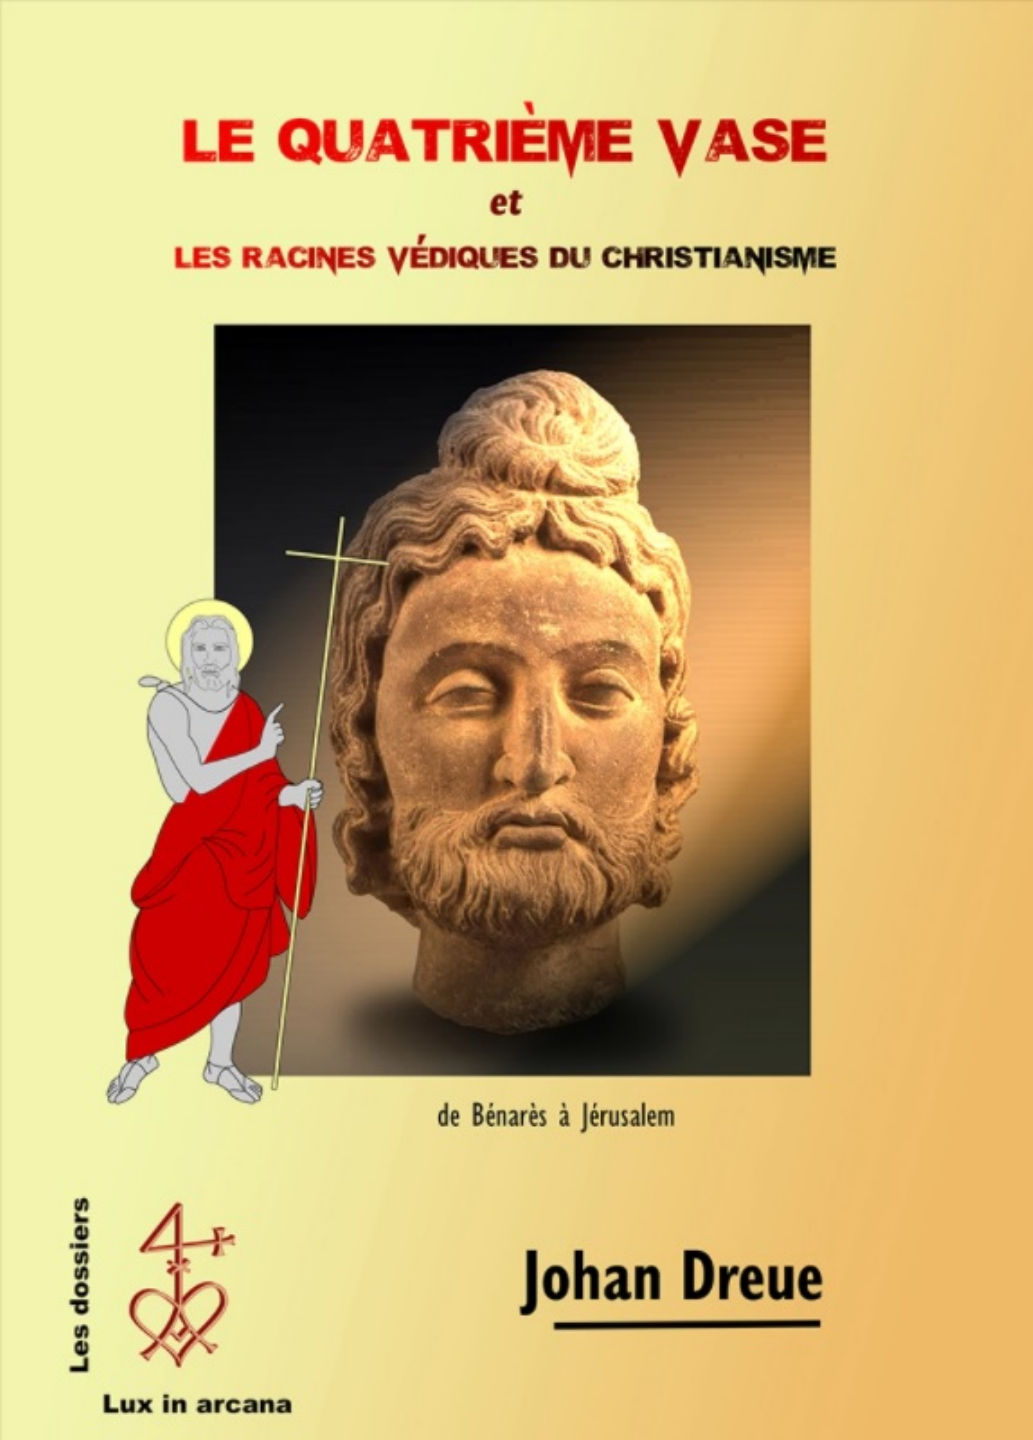 DREUE Johan Le quatrième vase et les racines védiques du christianisme Librairie Eklectic